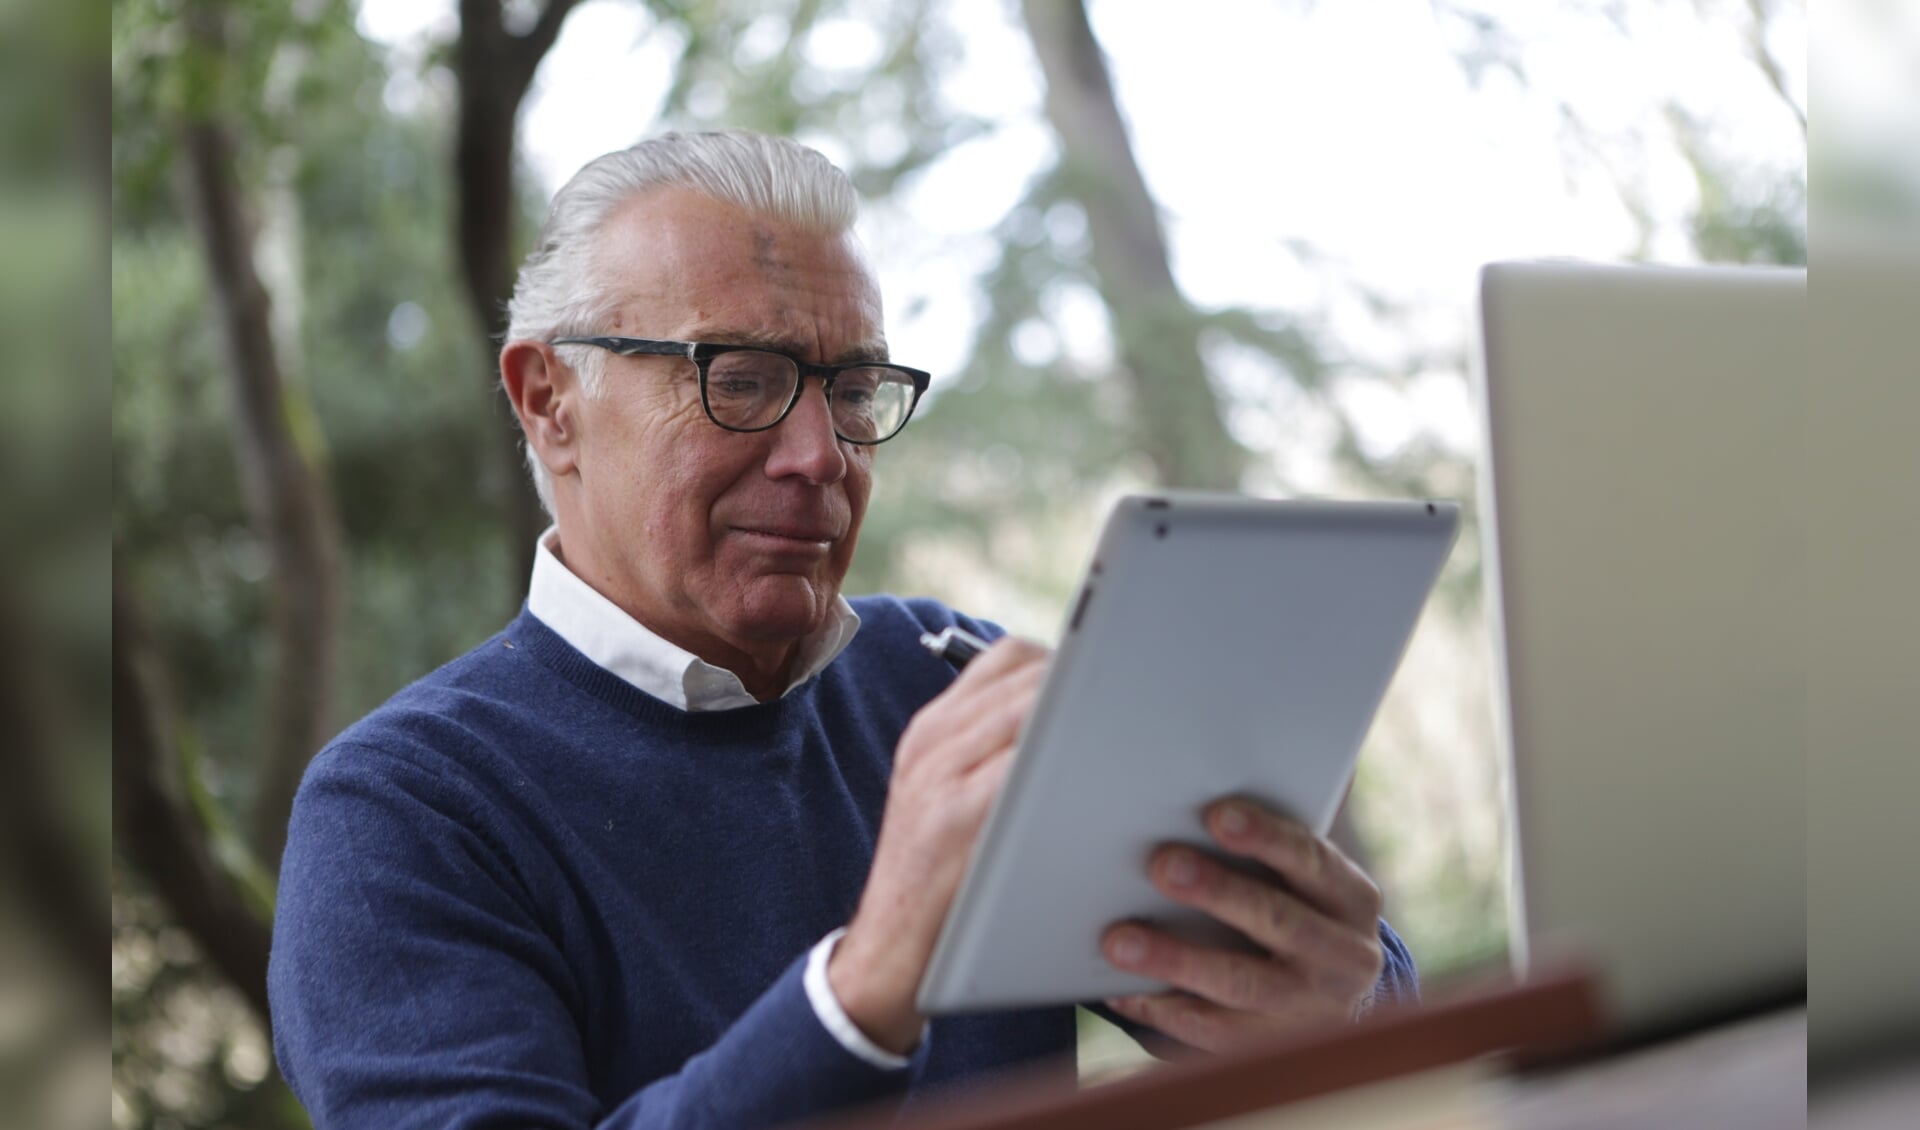 Niet iedereen is even vaardig met de tablet of smartphone. Met name ouderen hebben in dat opzicht vaak een achterstand. Met speciale lessen worden zij er ook handiger in.